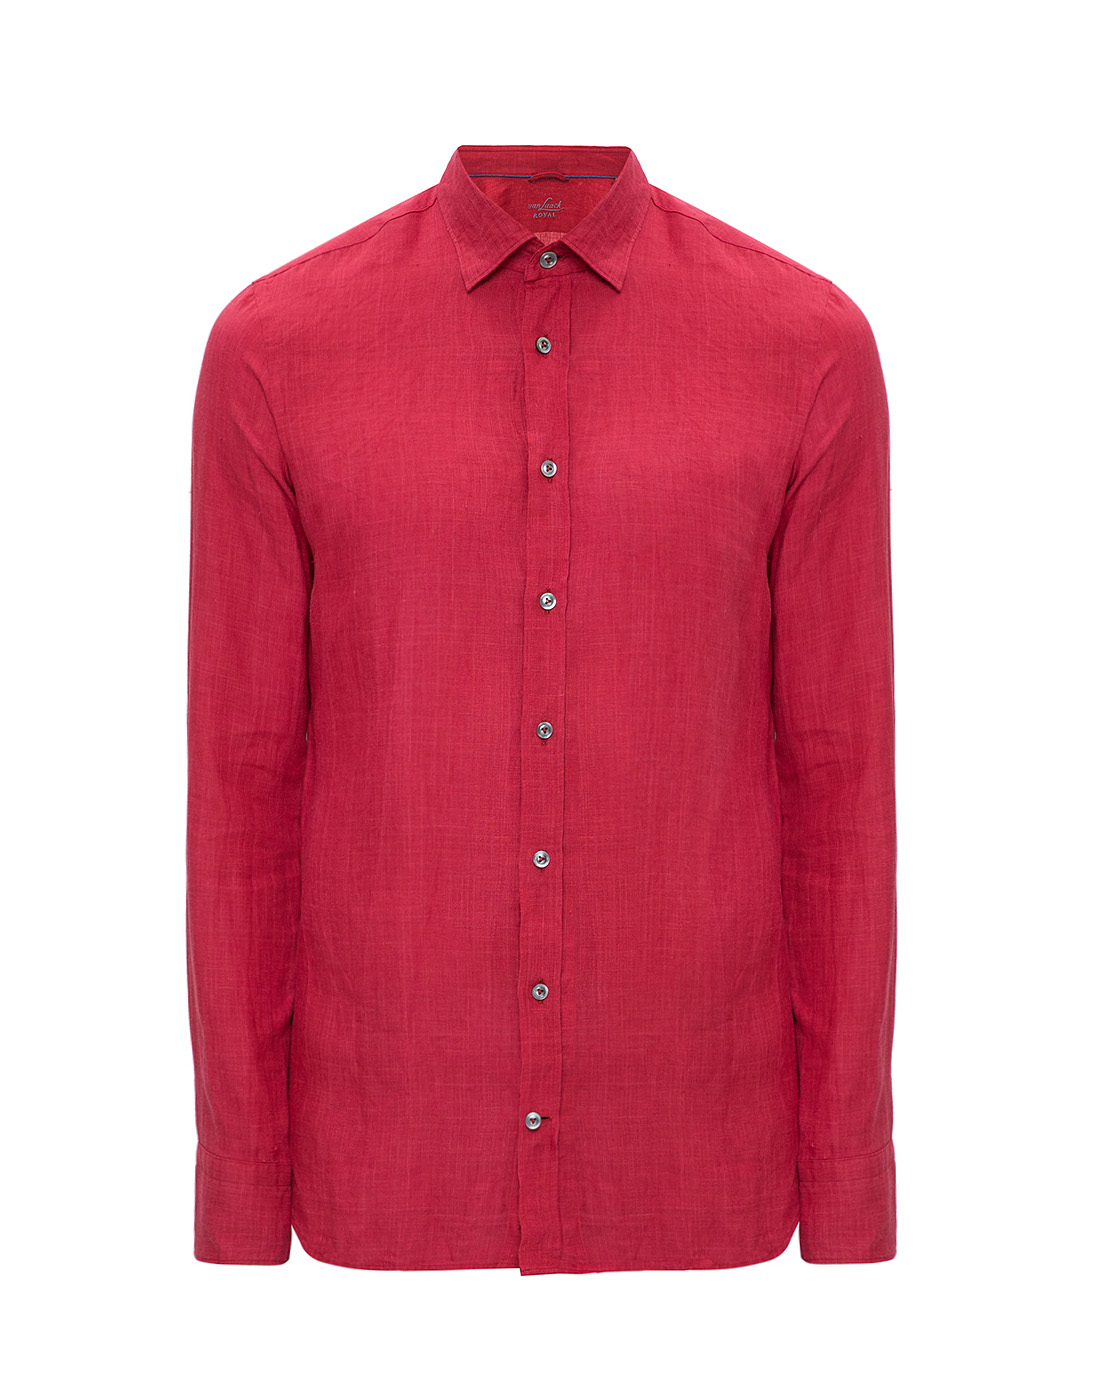 Мужская красная рубашка Van Laack S155315/570-1